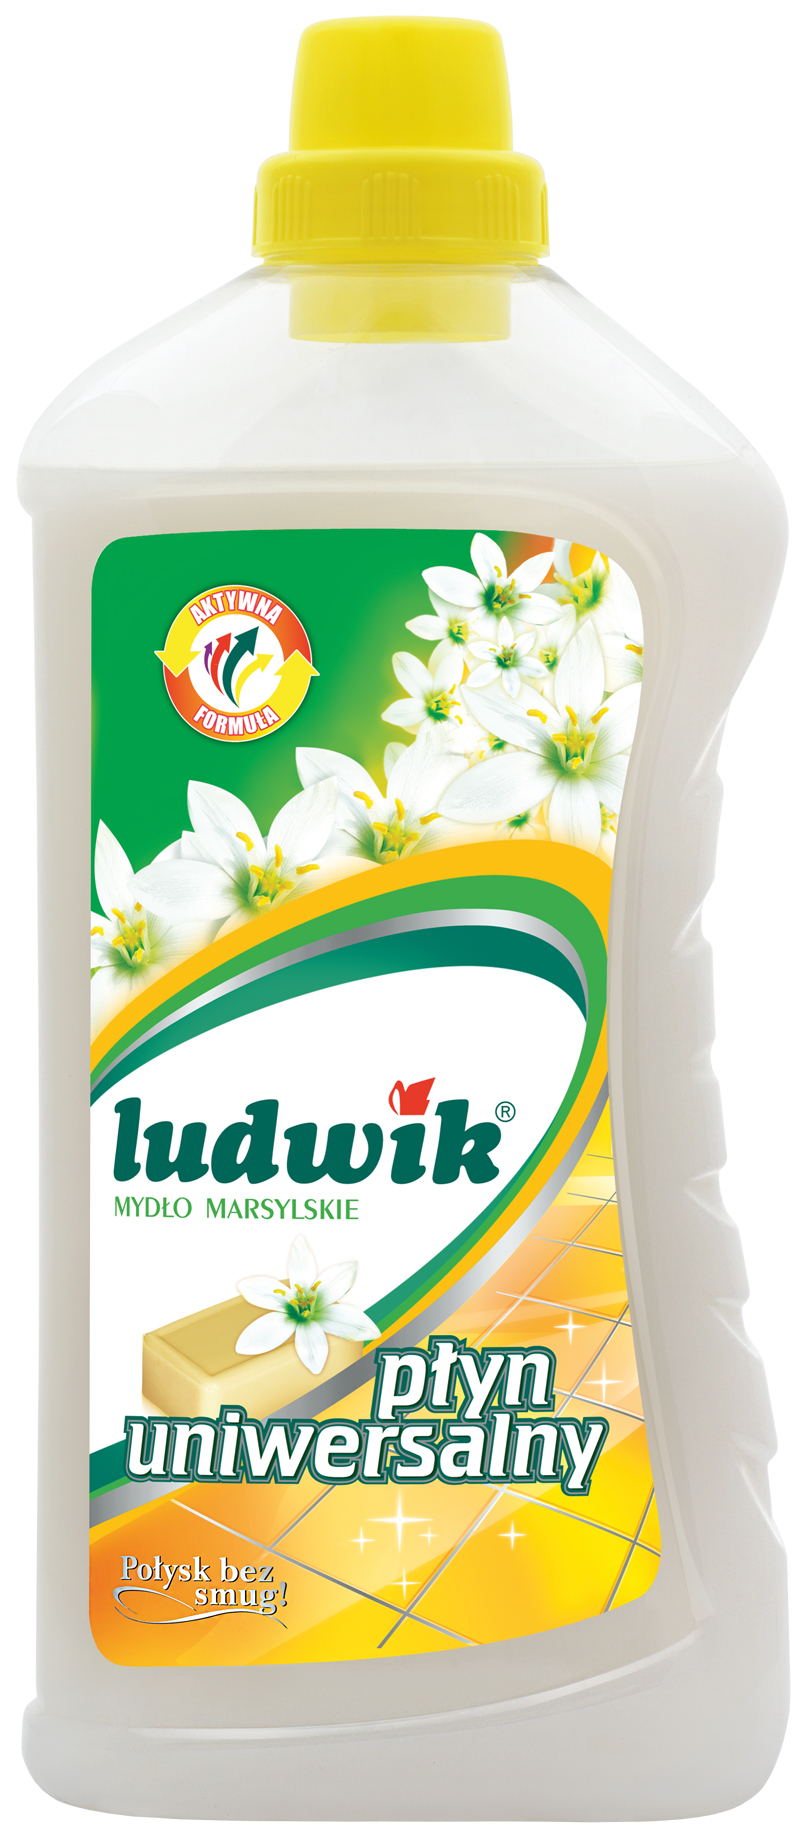 фото Универсальное чистящее средство ludwik марсельское мыло 1 л